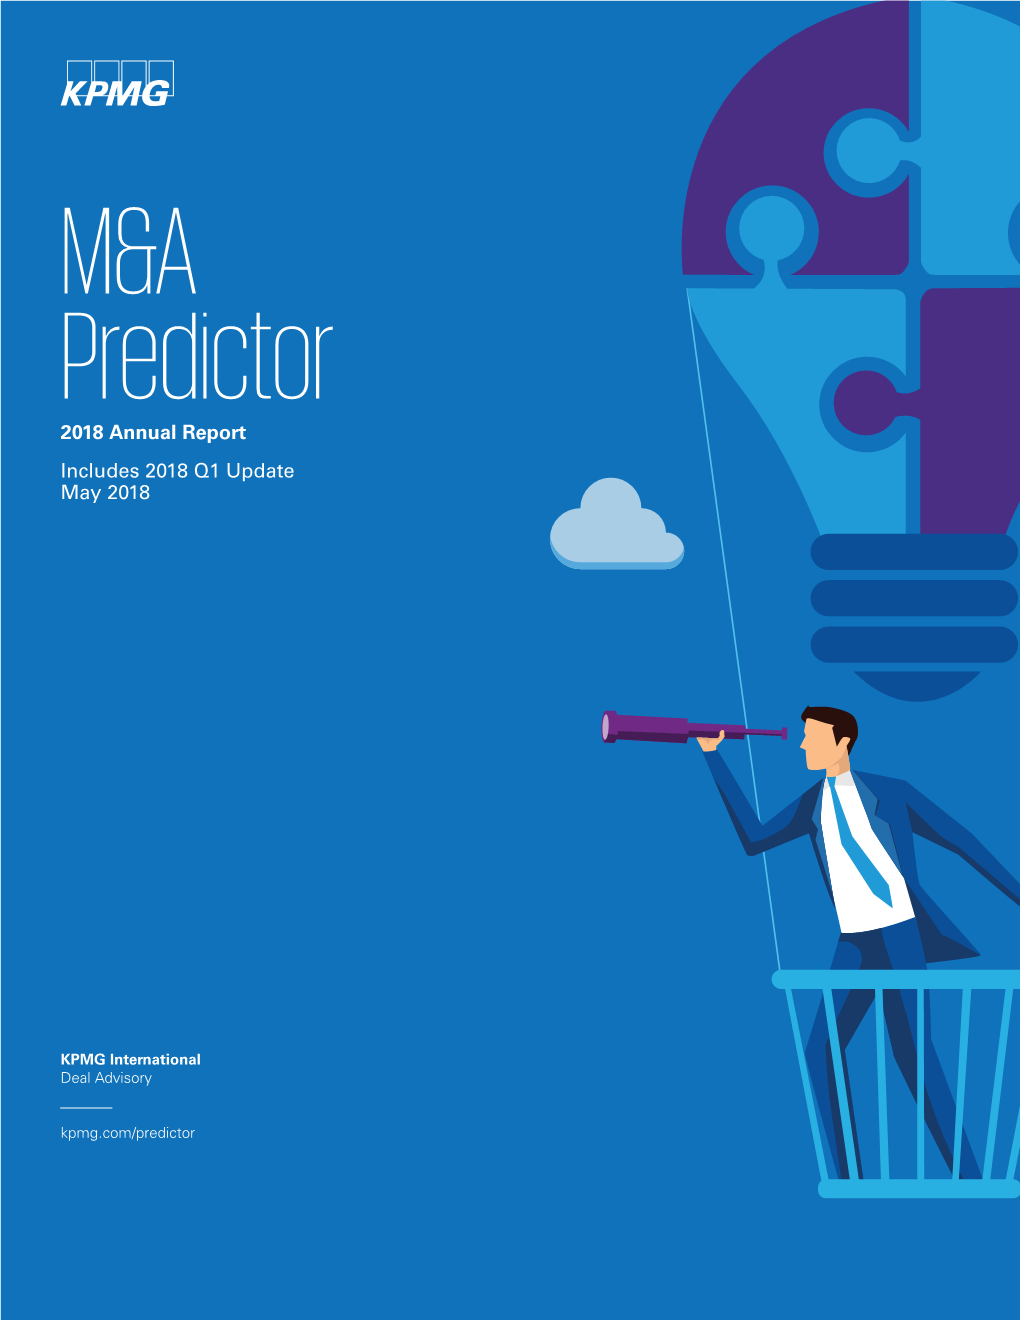 M&A Predictor 2018 Annual Report